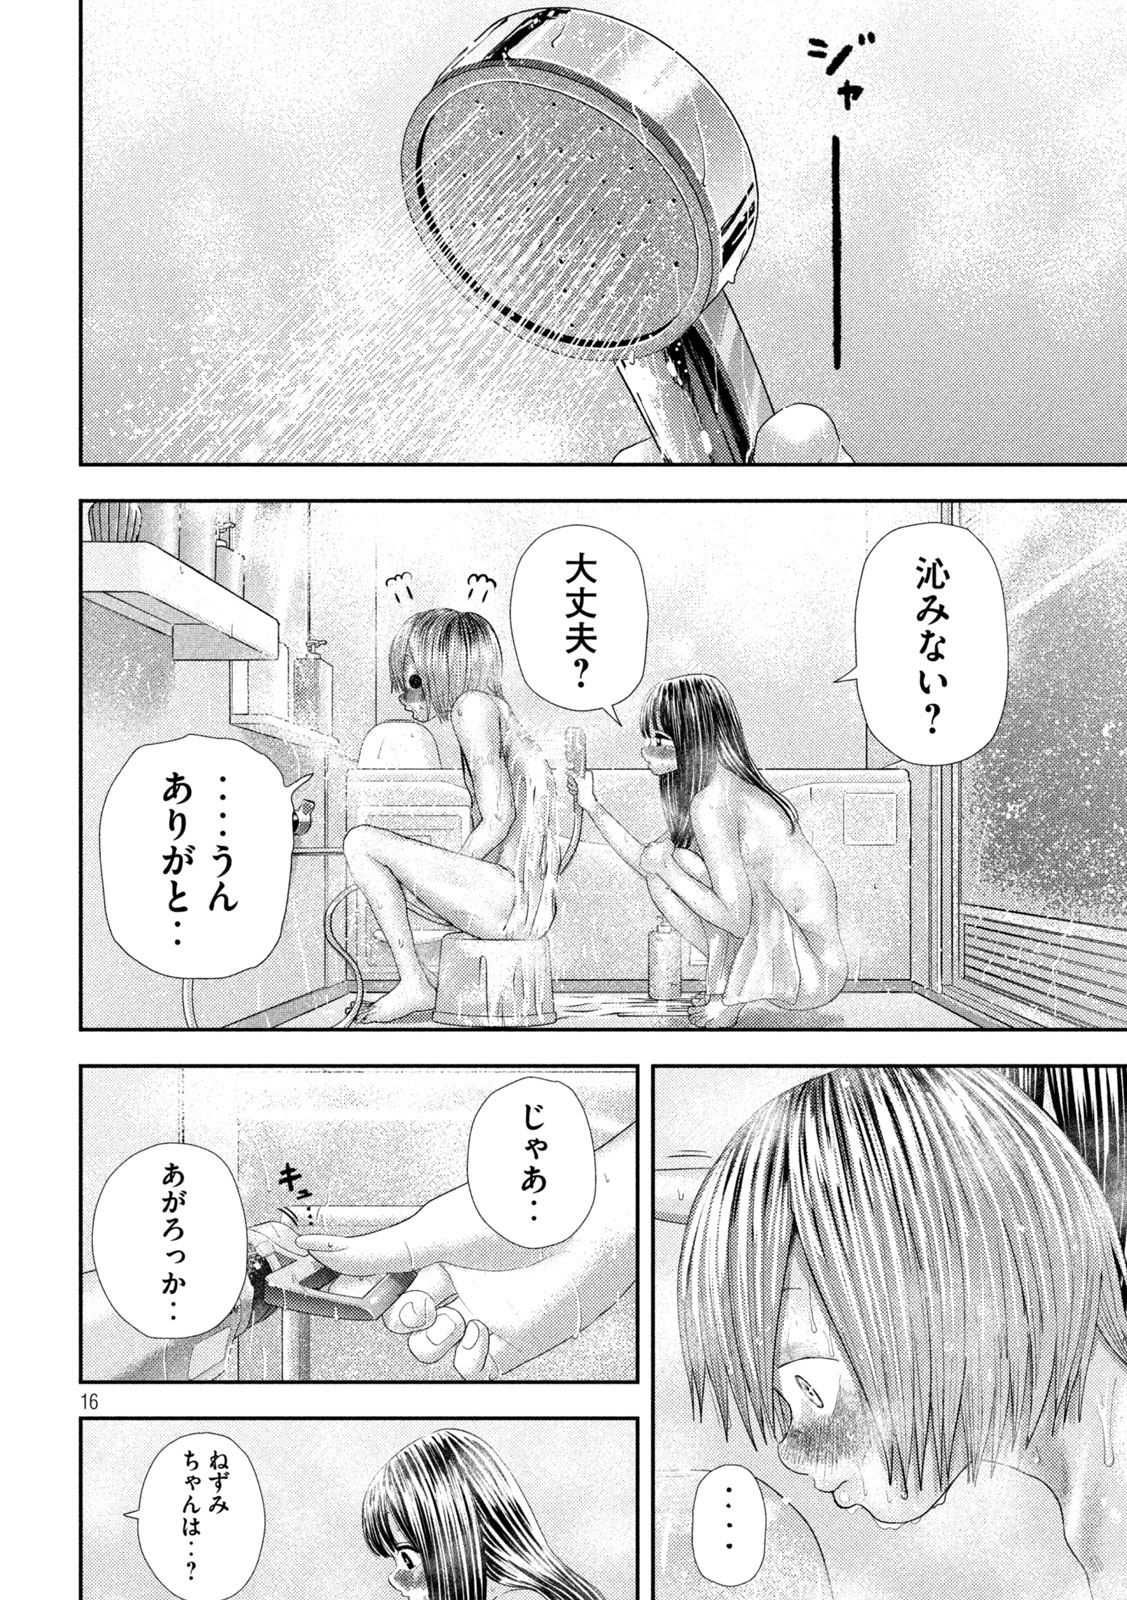 Nezumi no Koi - Chapter 27 - Page 16